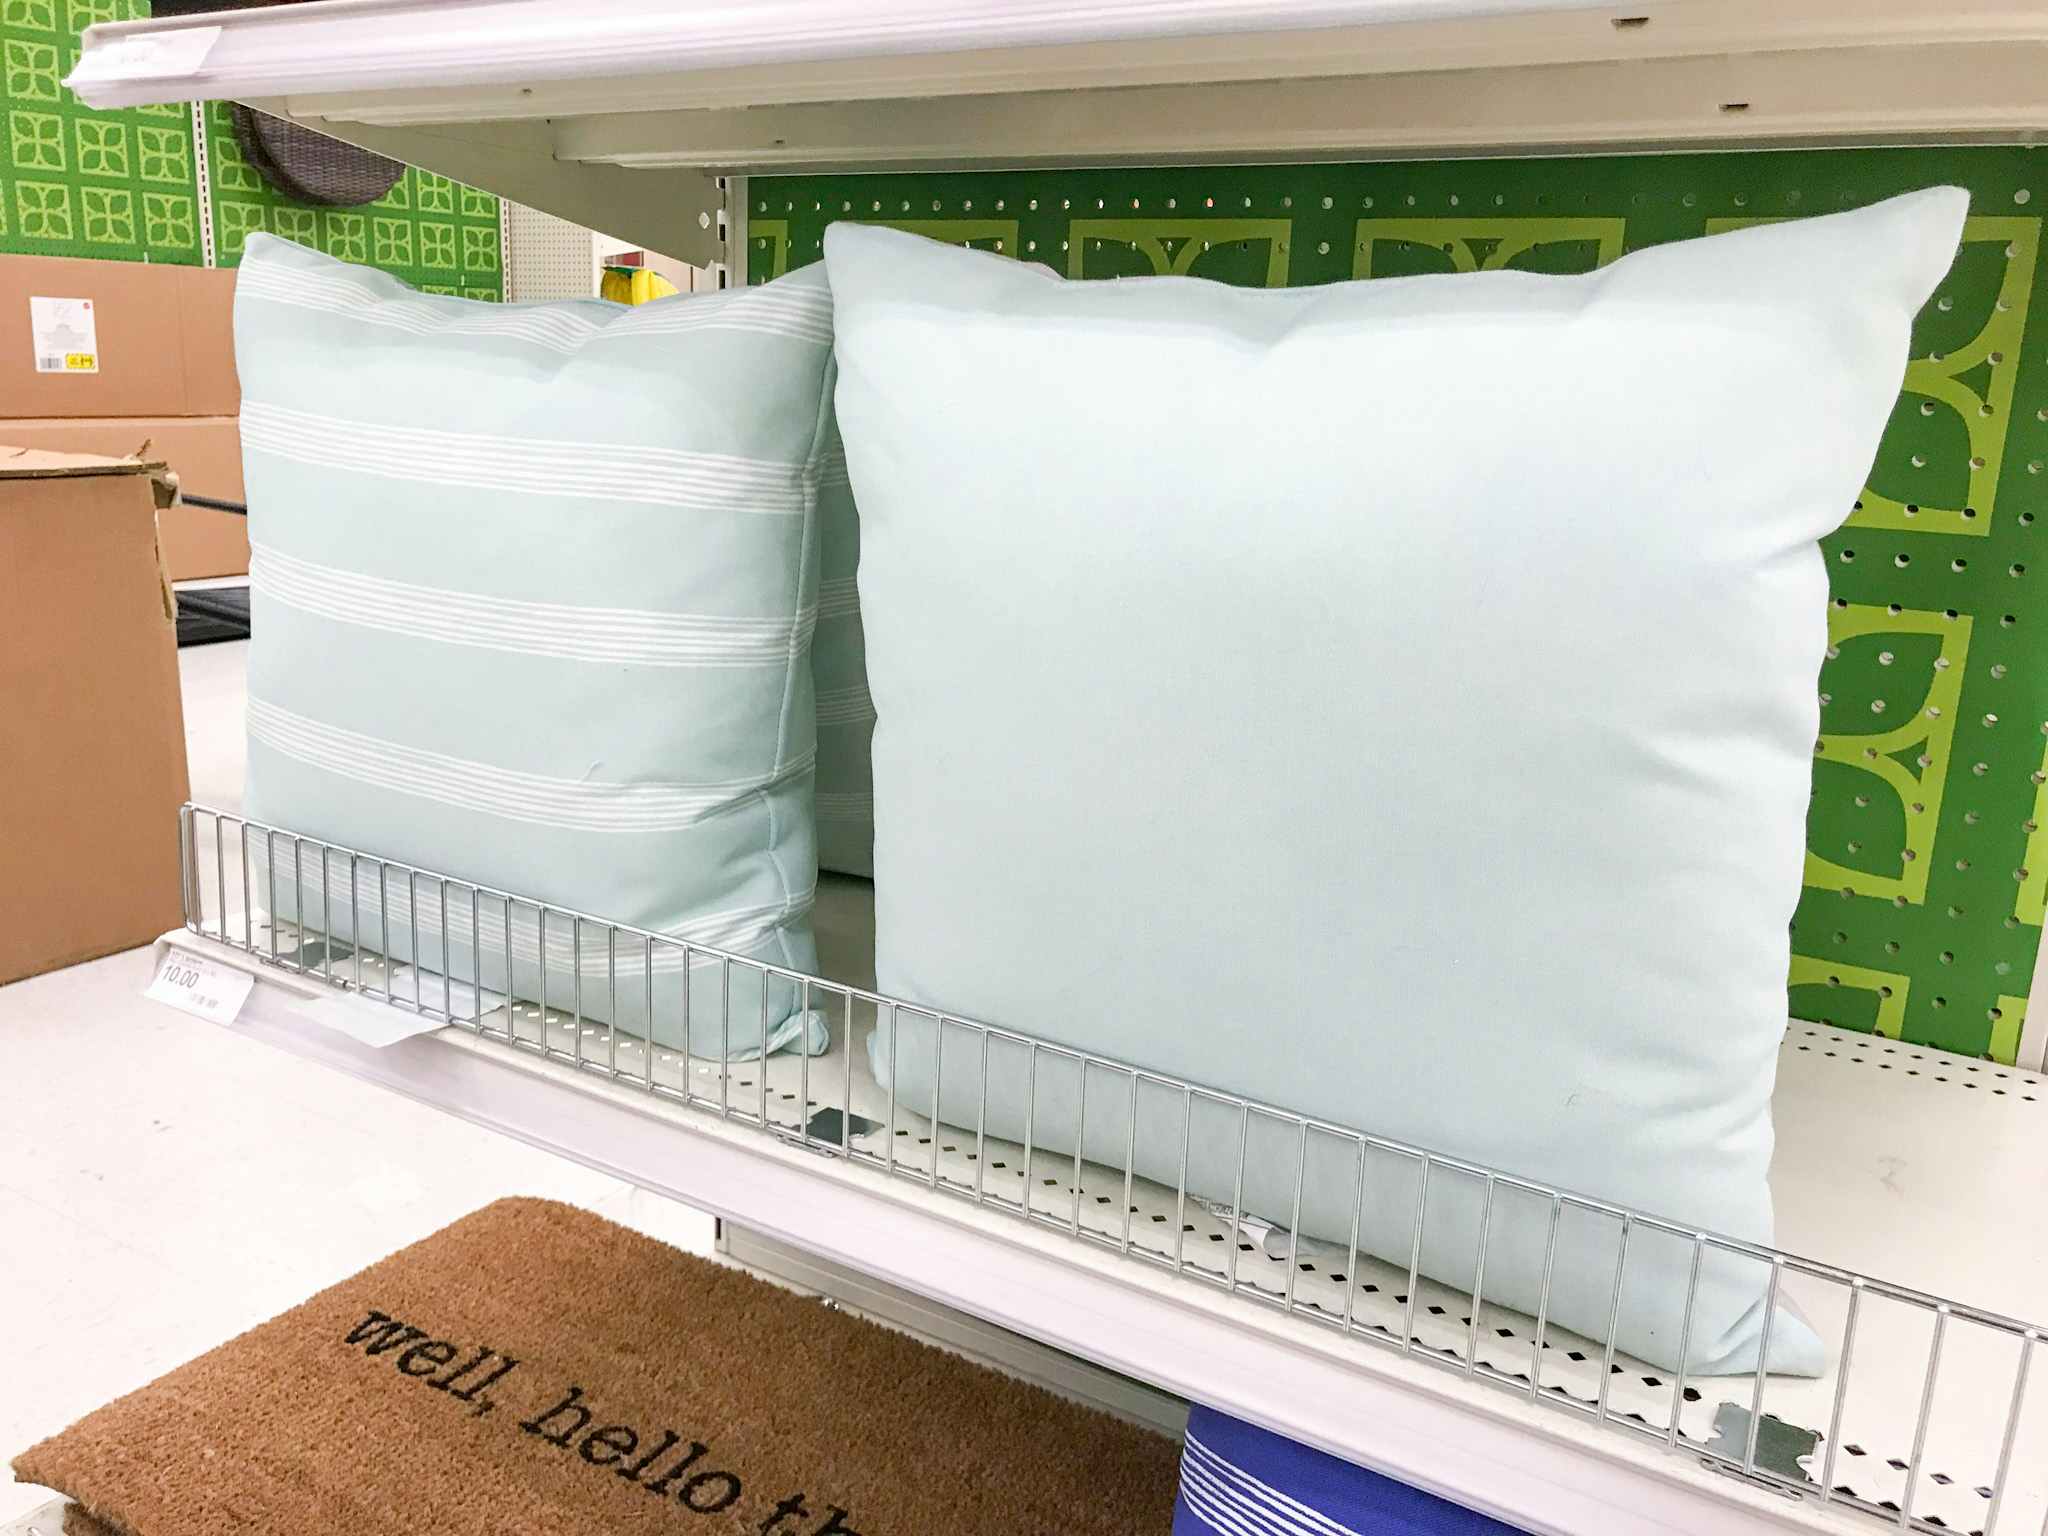 throw pillows on a target shelf